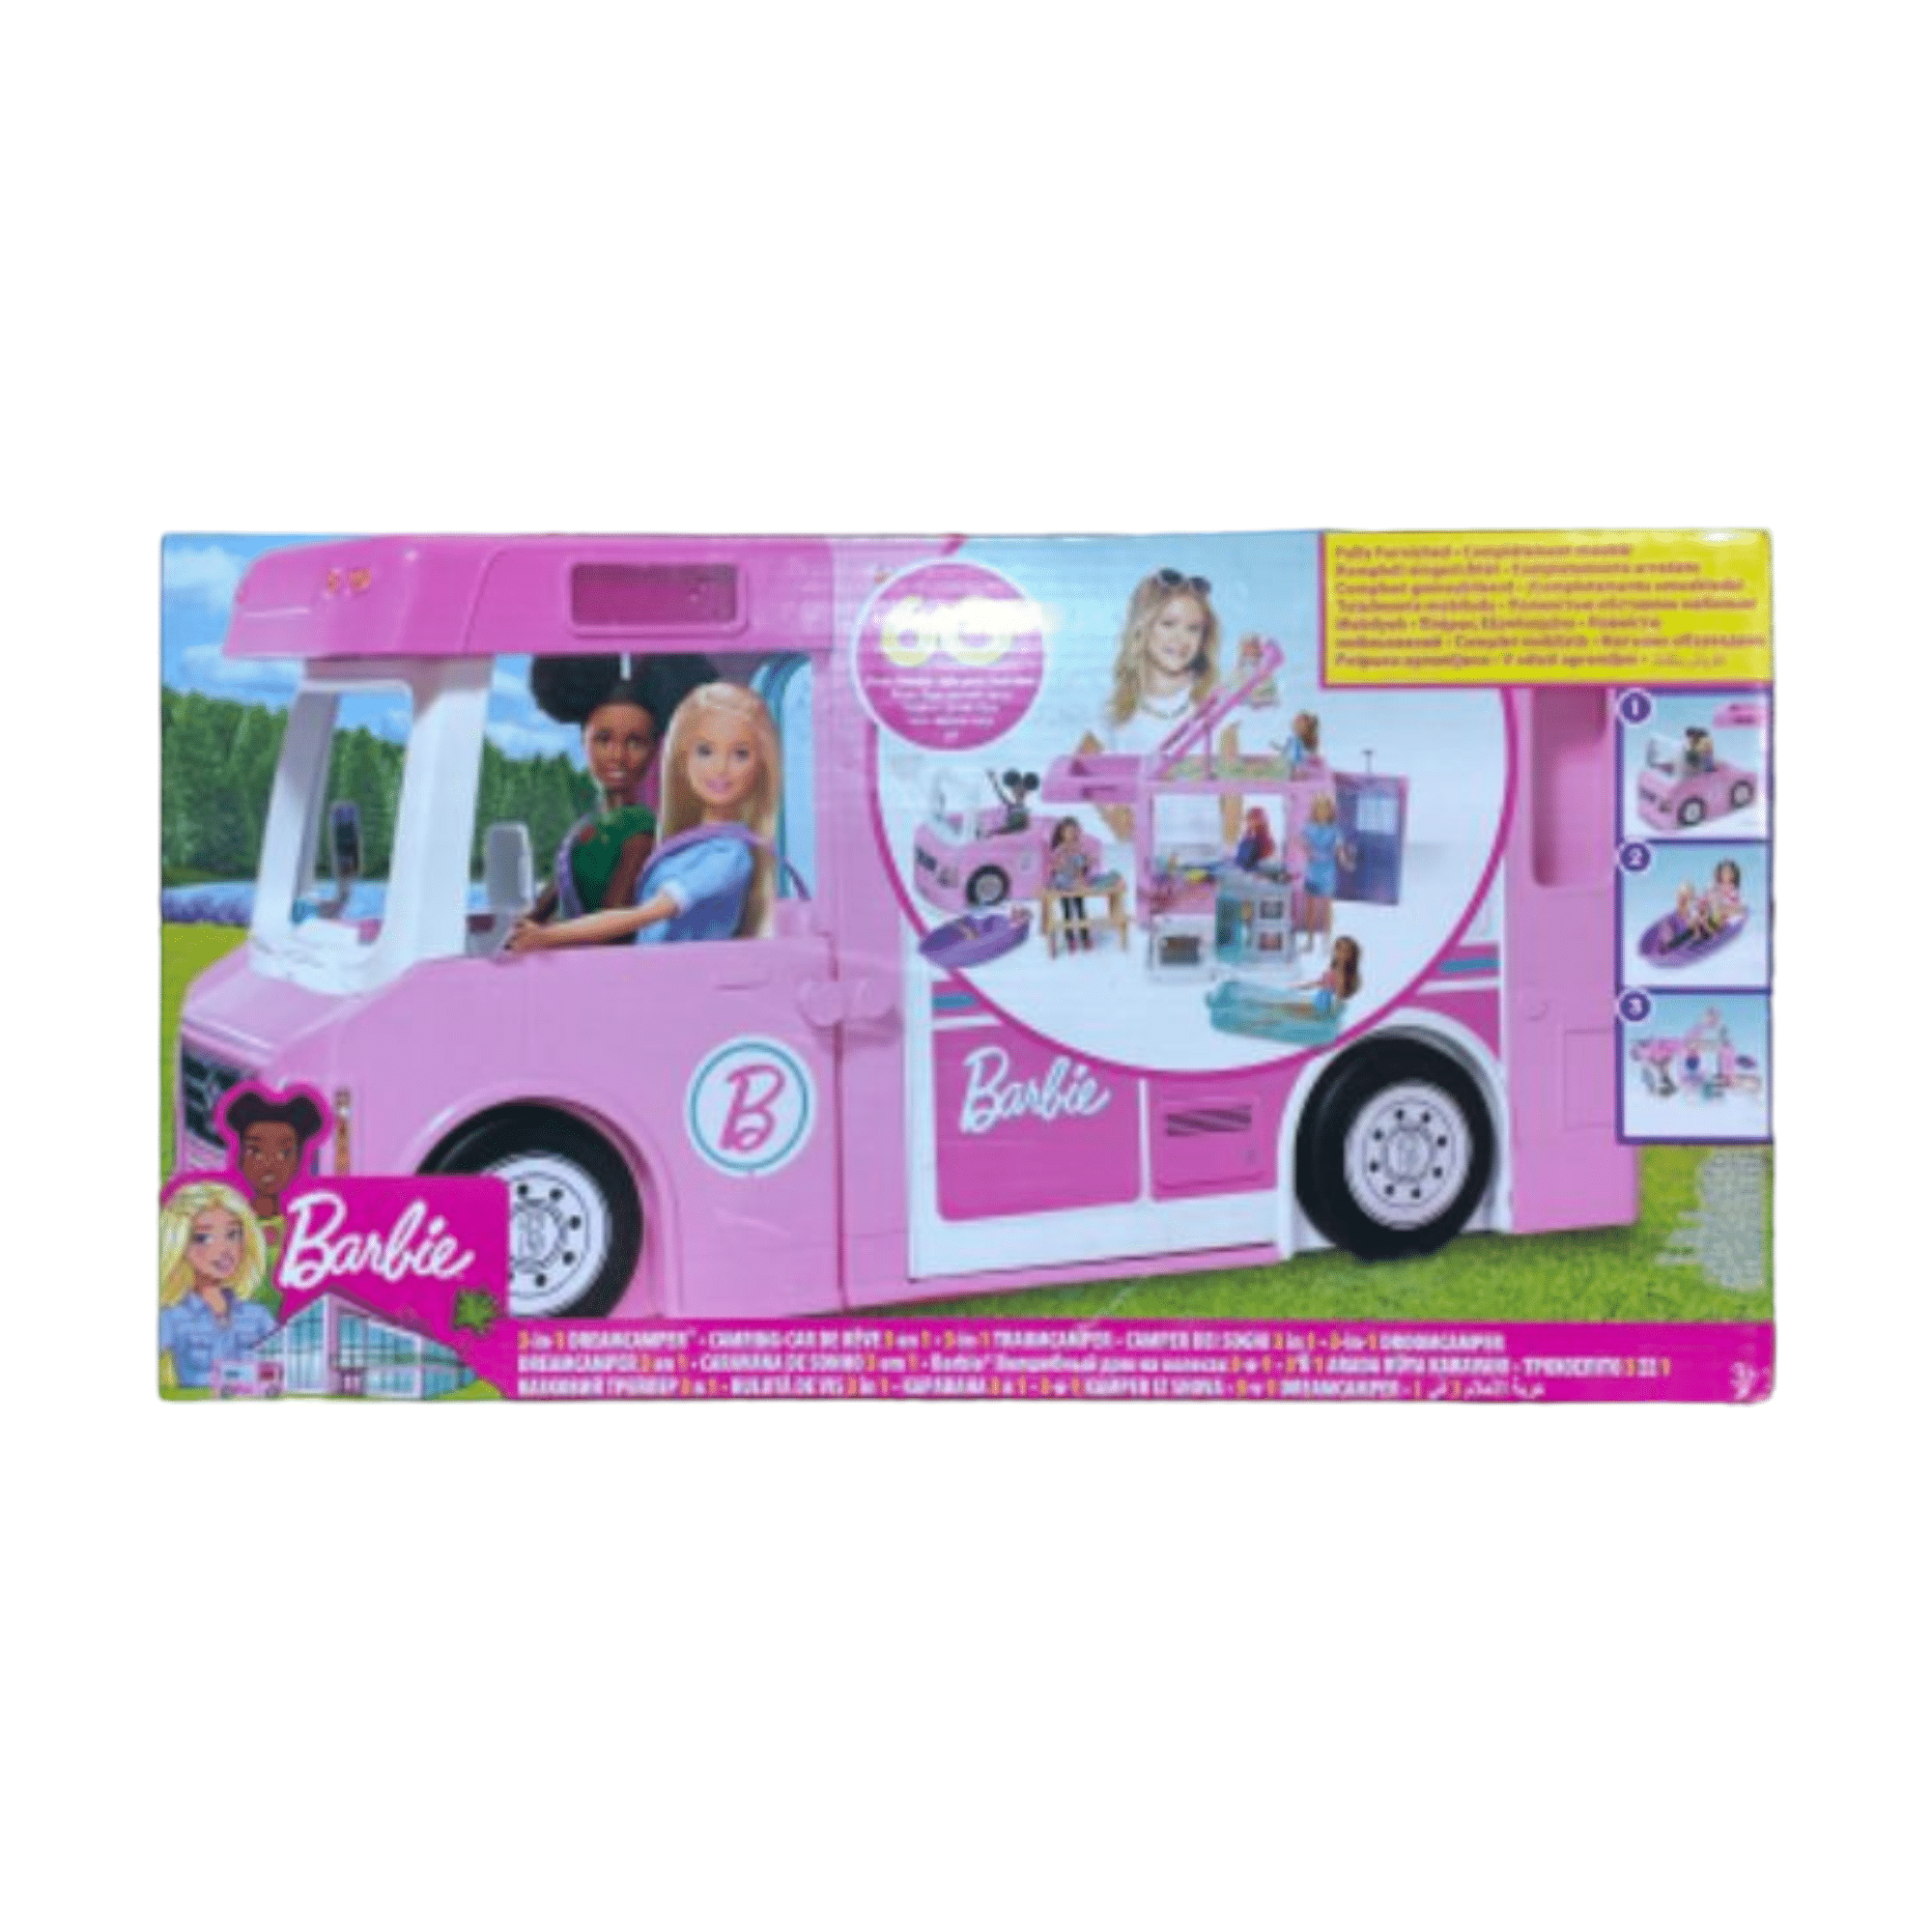 קרוואן החלומות של ברבי – Barbie, קרוואן ענק בצבע ורוד 3 ב-1 + אביזרים מבית Mattel